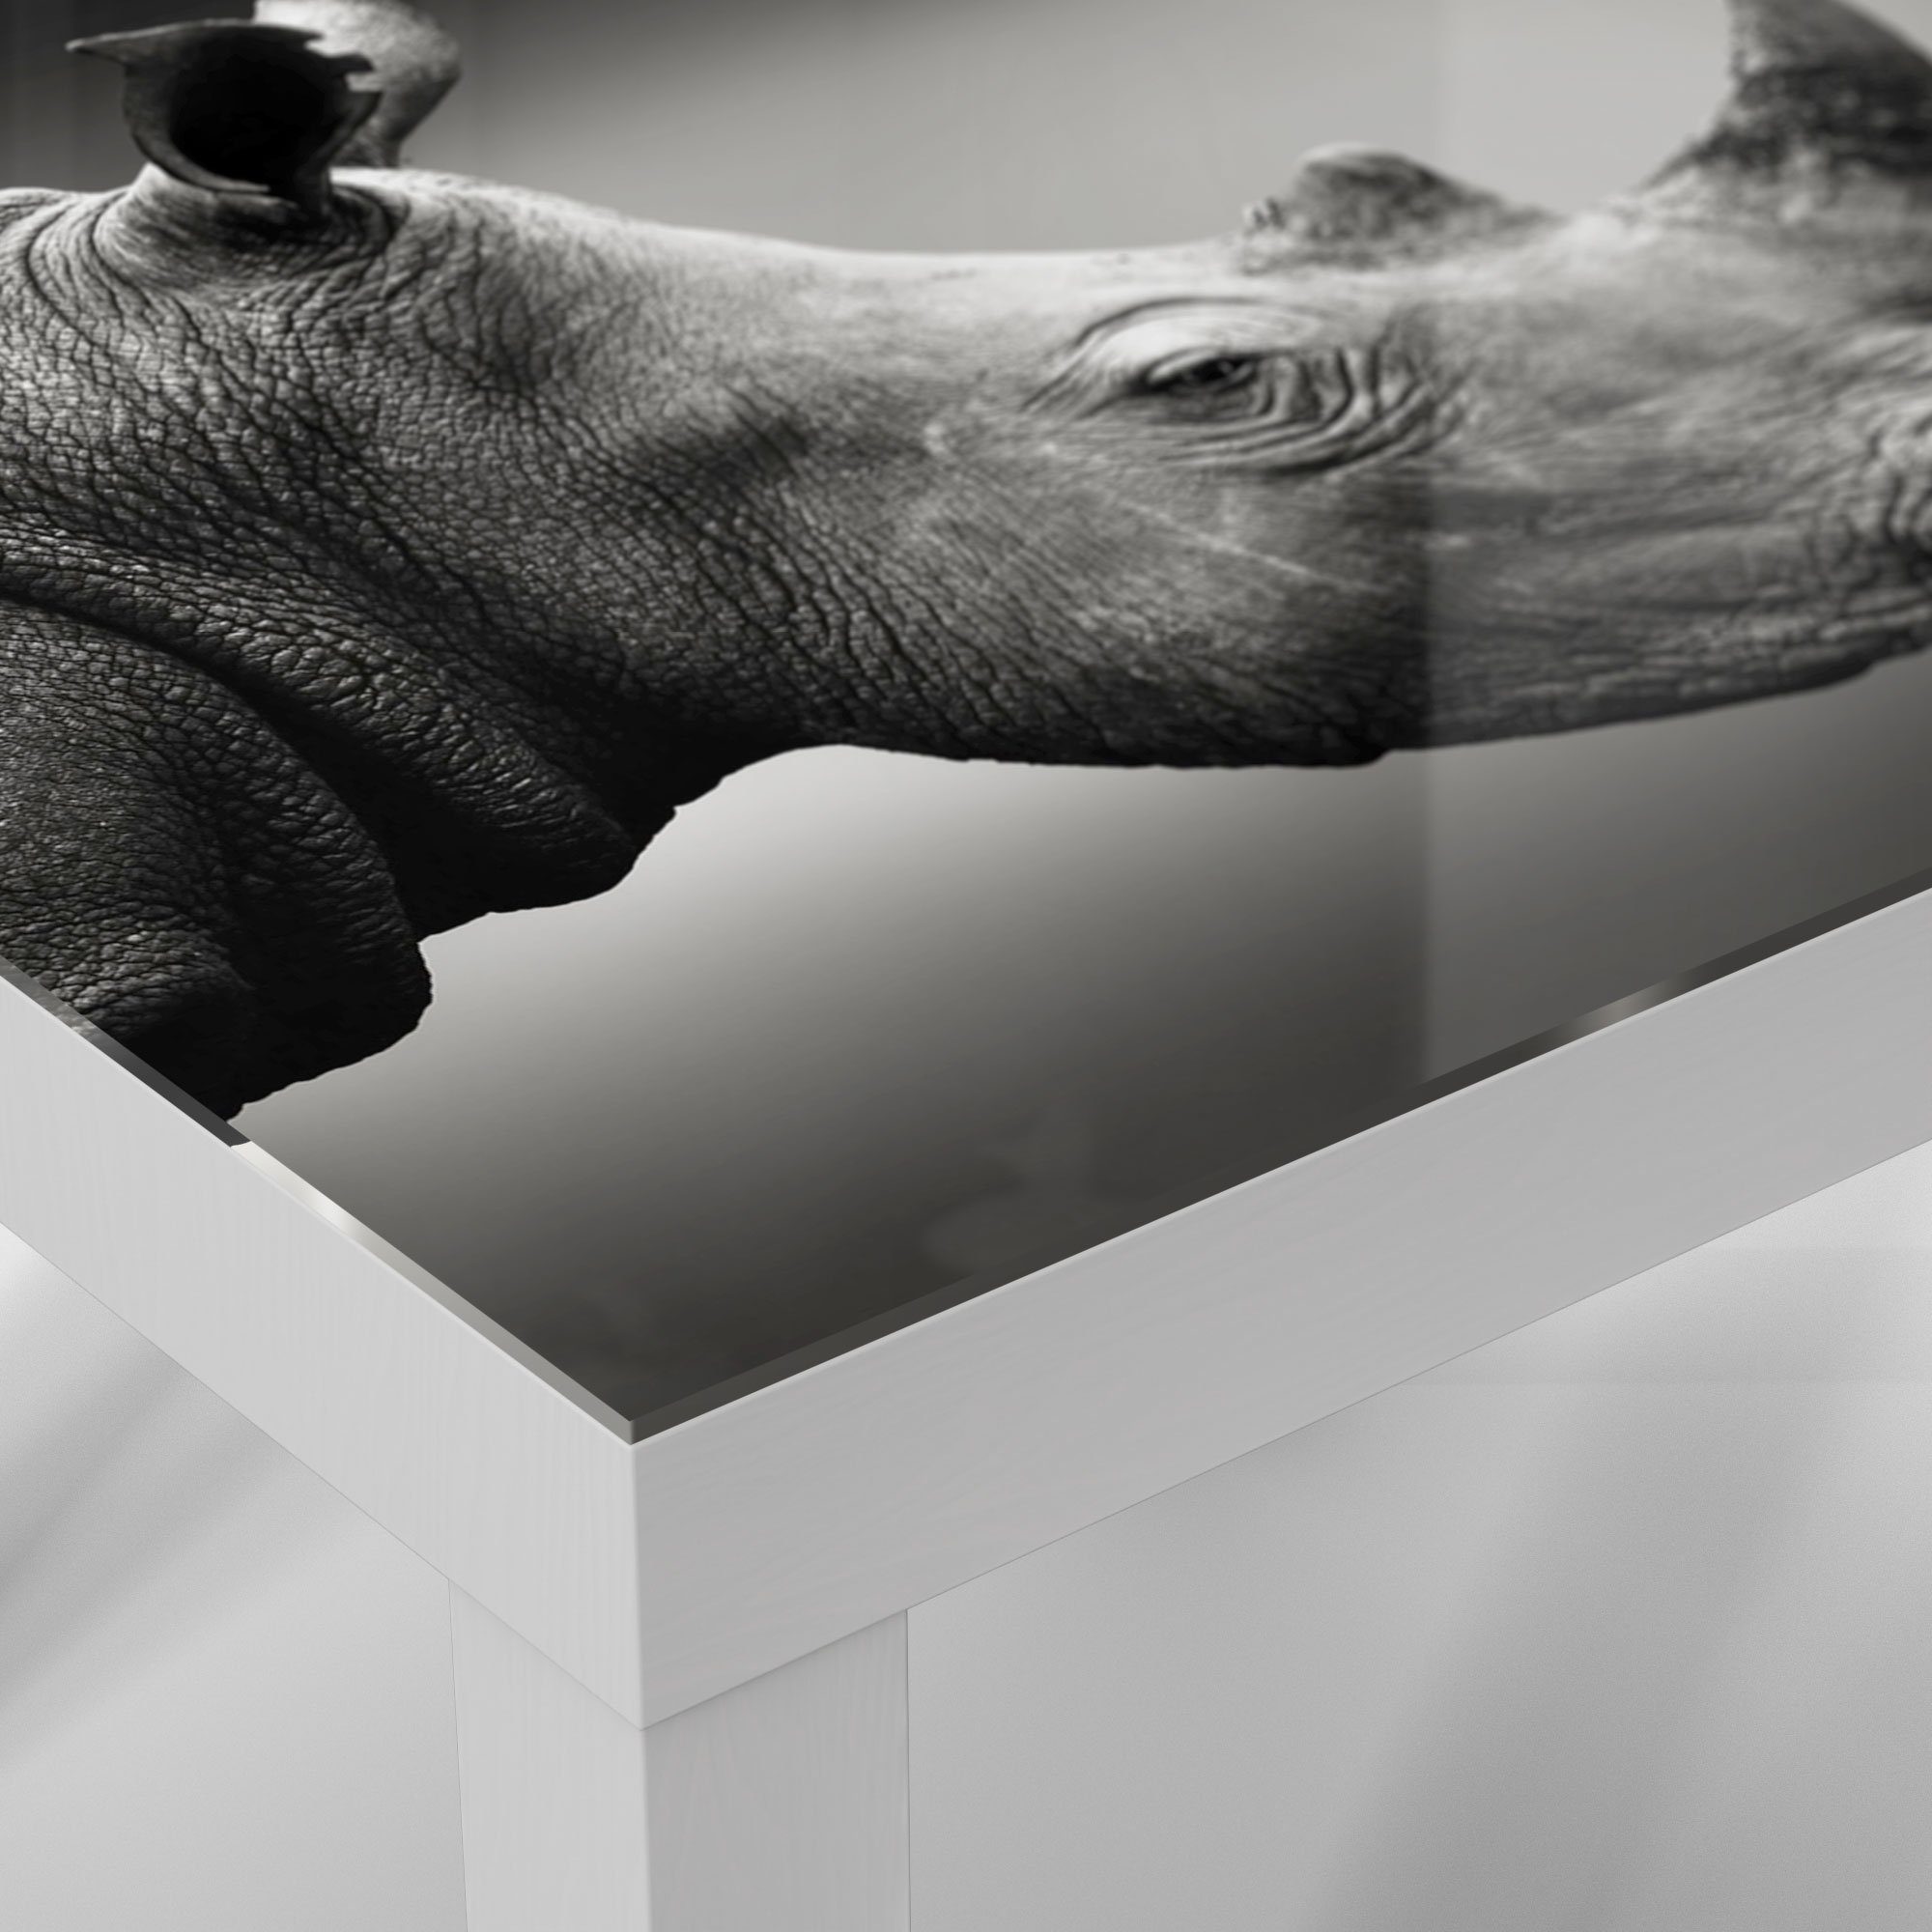 DEQORI Couchtisch 'Nashorn im Profil', modern Beistelltisch Weiß Glas Glastisch